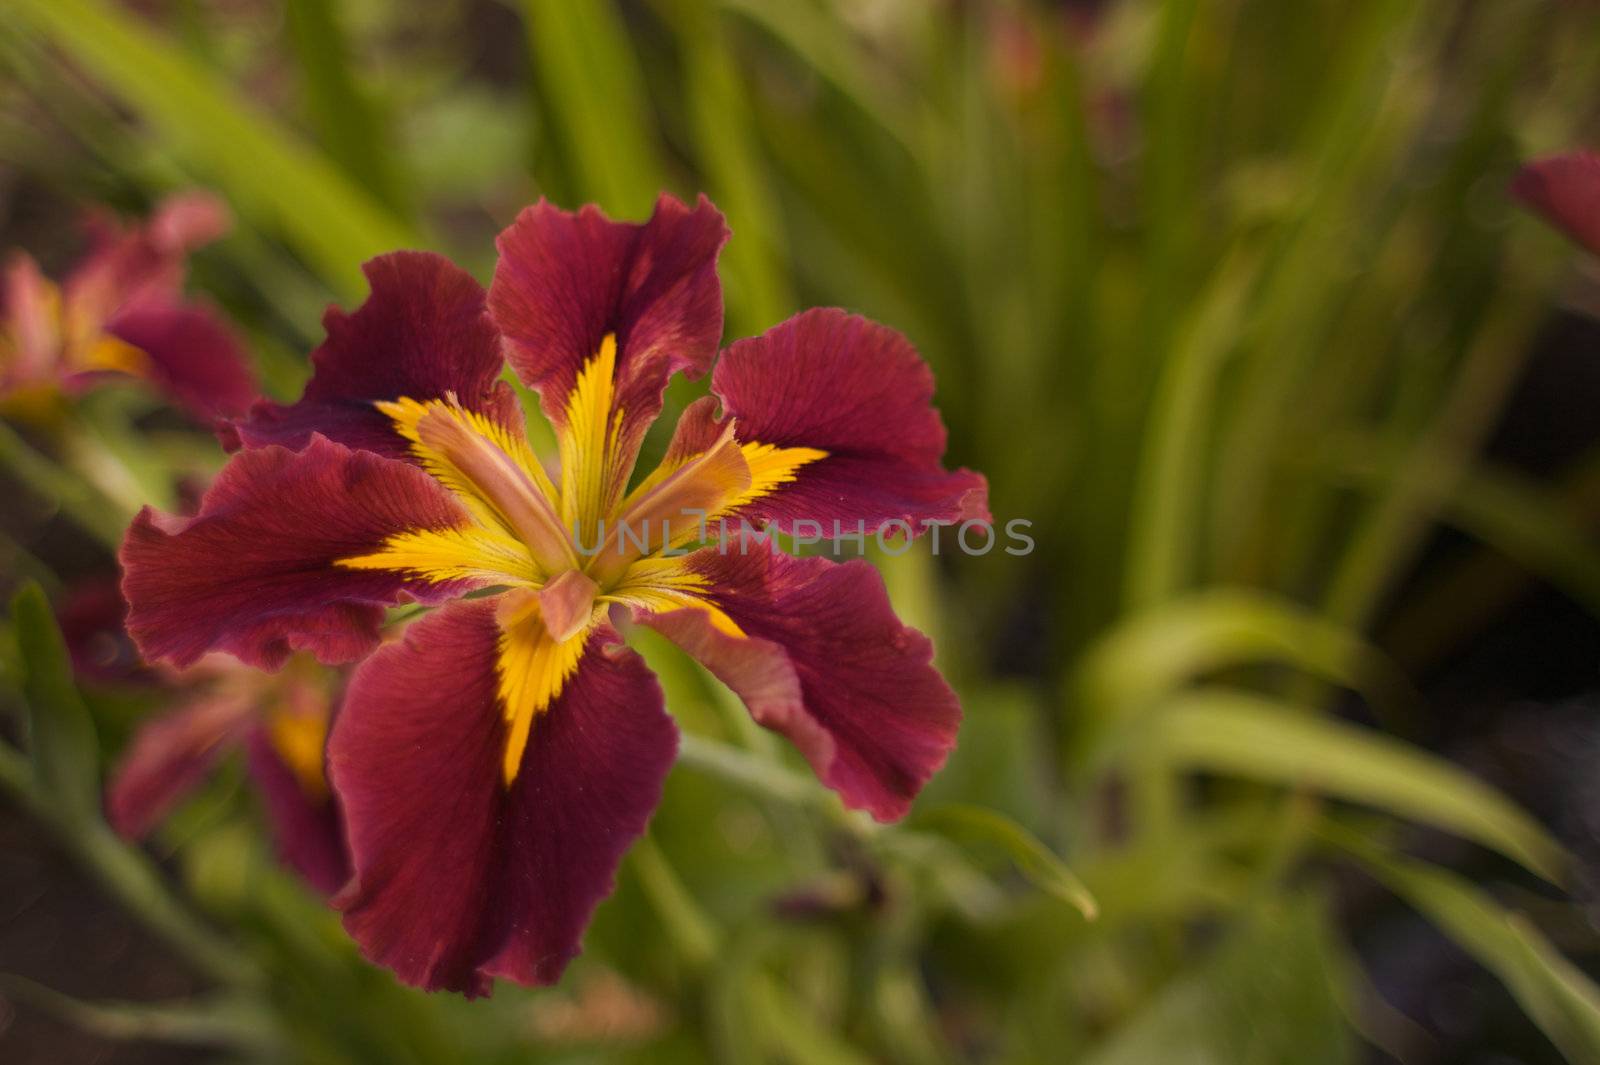 Burgundy Yellow Iris soft focus by bobkeenan